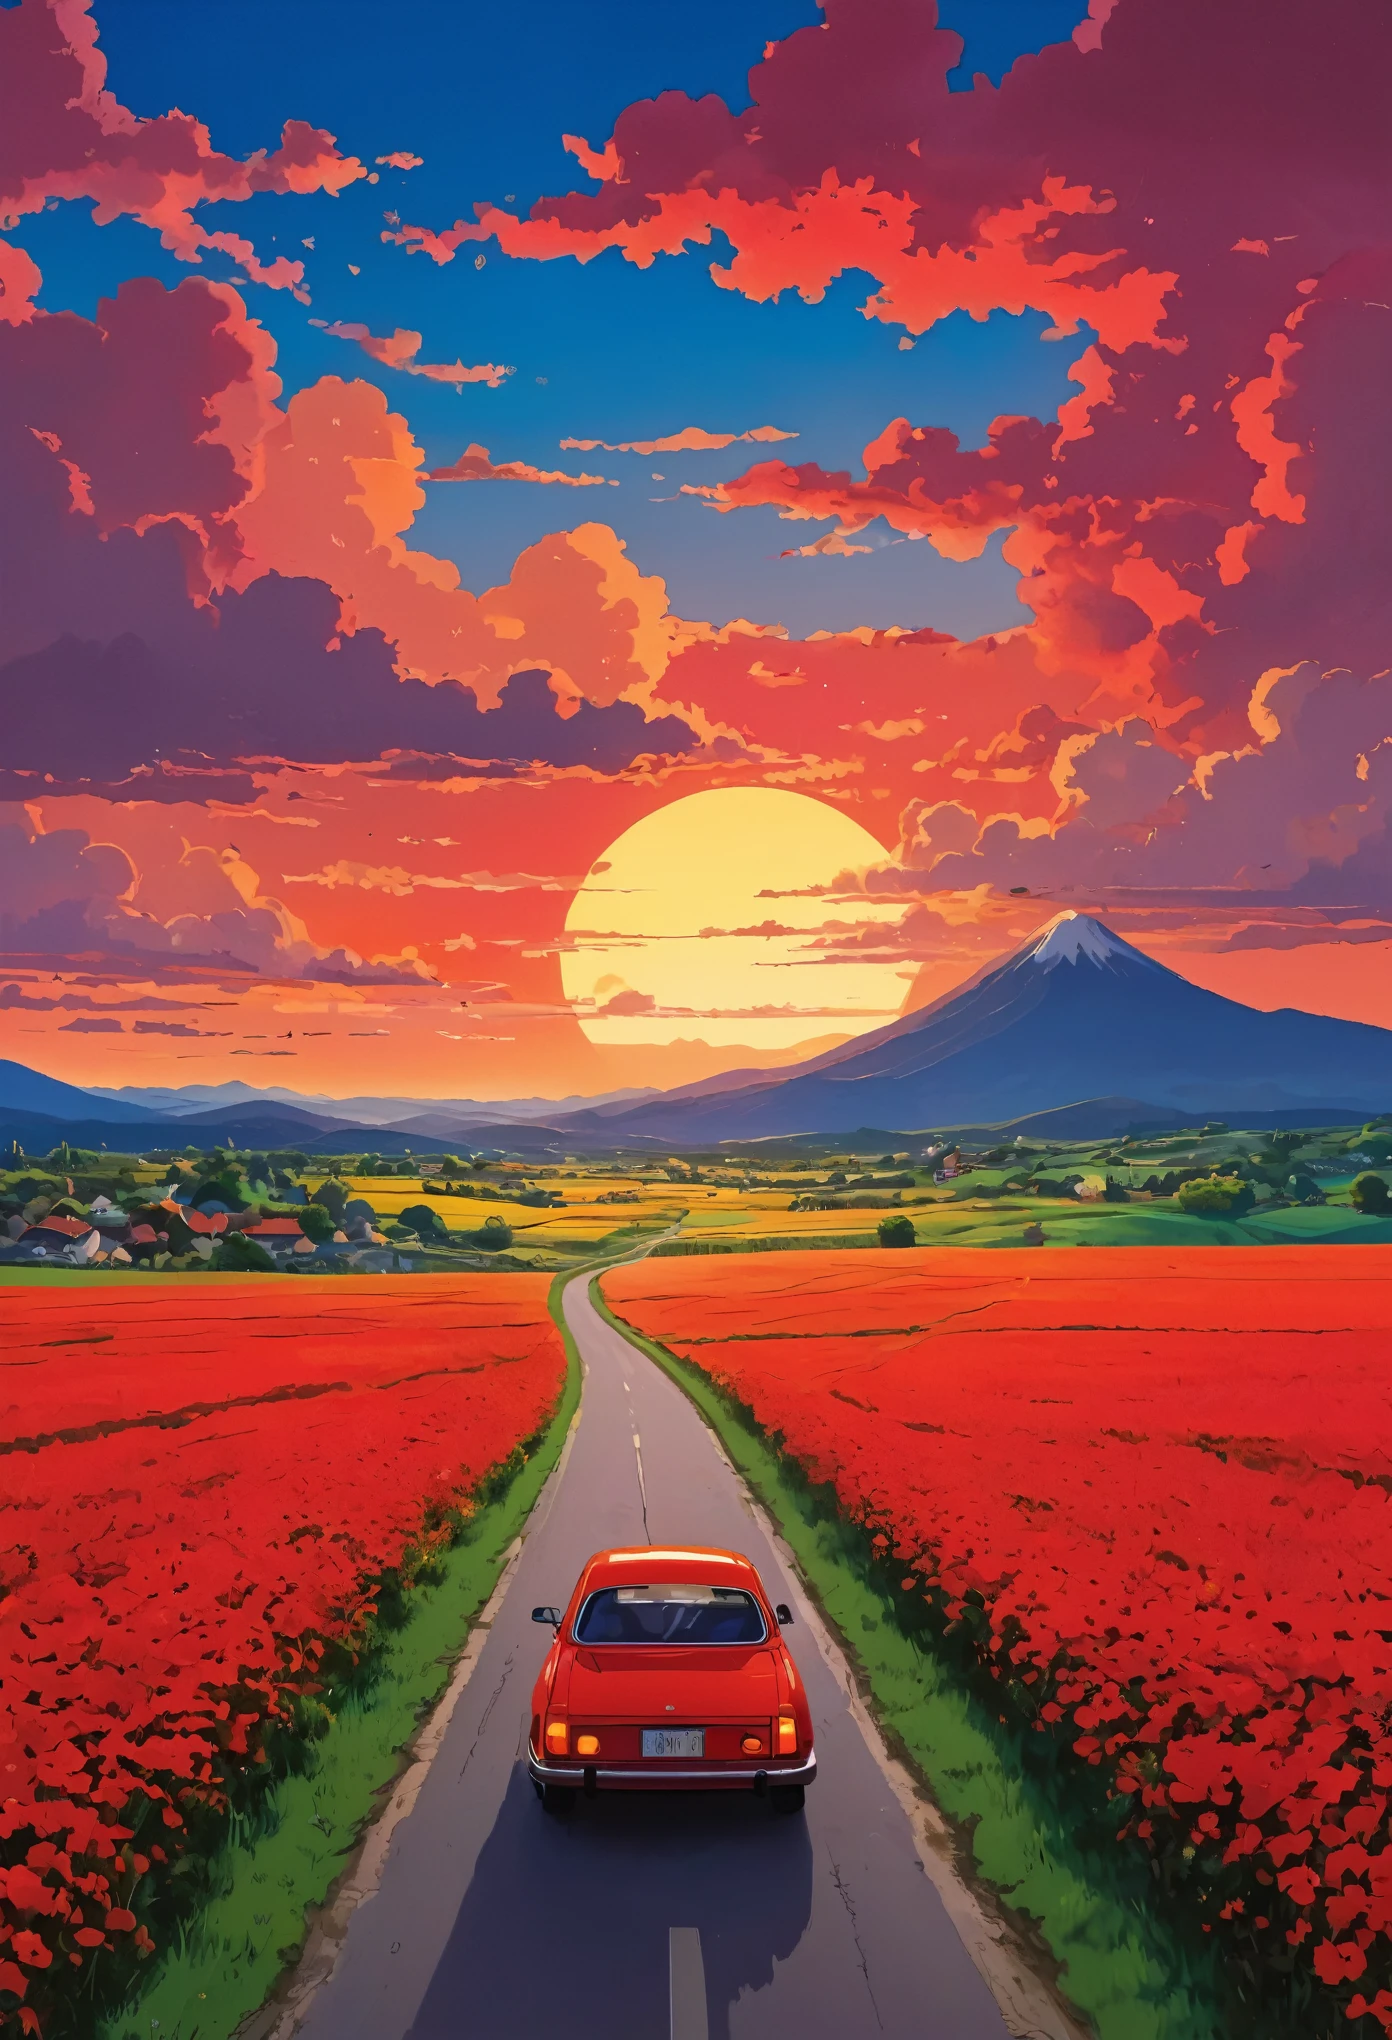 (تقليلية:1.4), هناك سيارة حمراء على الطريق, فن استوديو جيبلي, ميازاكي, المراعي مع السماء الحمراء والسحب الحمراء, منظر غروب الشمس, طريق مليء بالزهور, ألوان نابضة بالحياة 